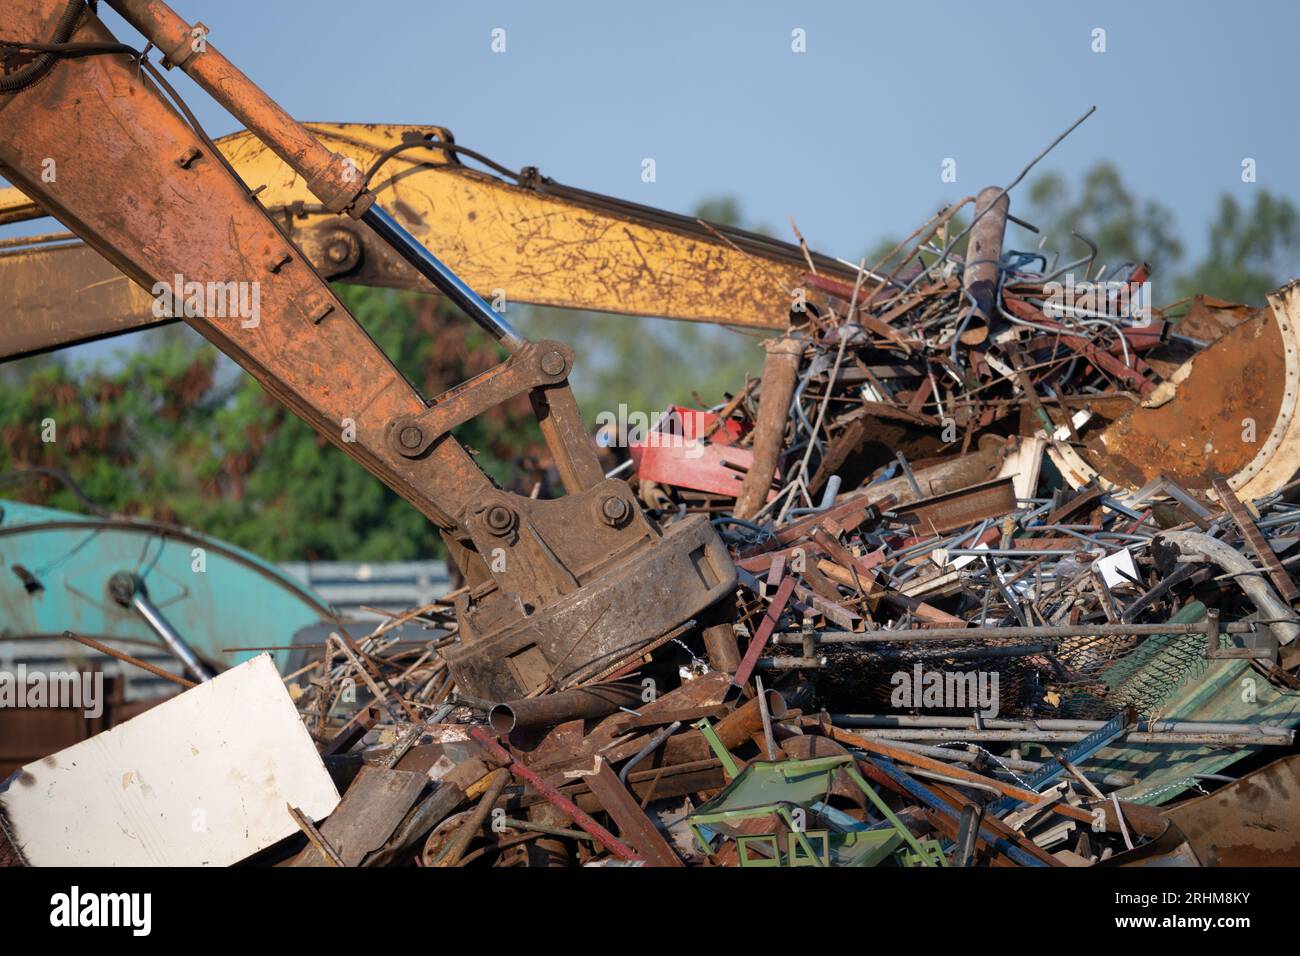 Il magnete dell'escavatore solleva i rottami d'acciaio dal cumulo di materiali riciclati presso il deposito di rottami in un impianto di riciclaggio. Escavatore con aspiratore elettromagnetico Foto Stock